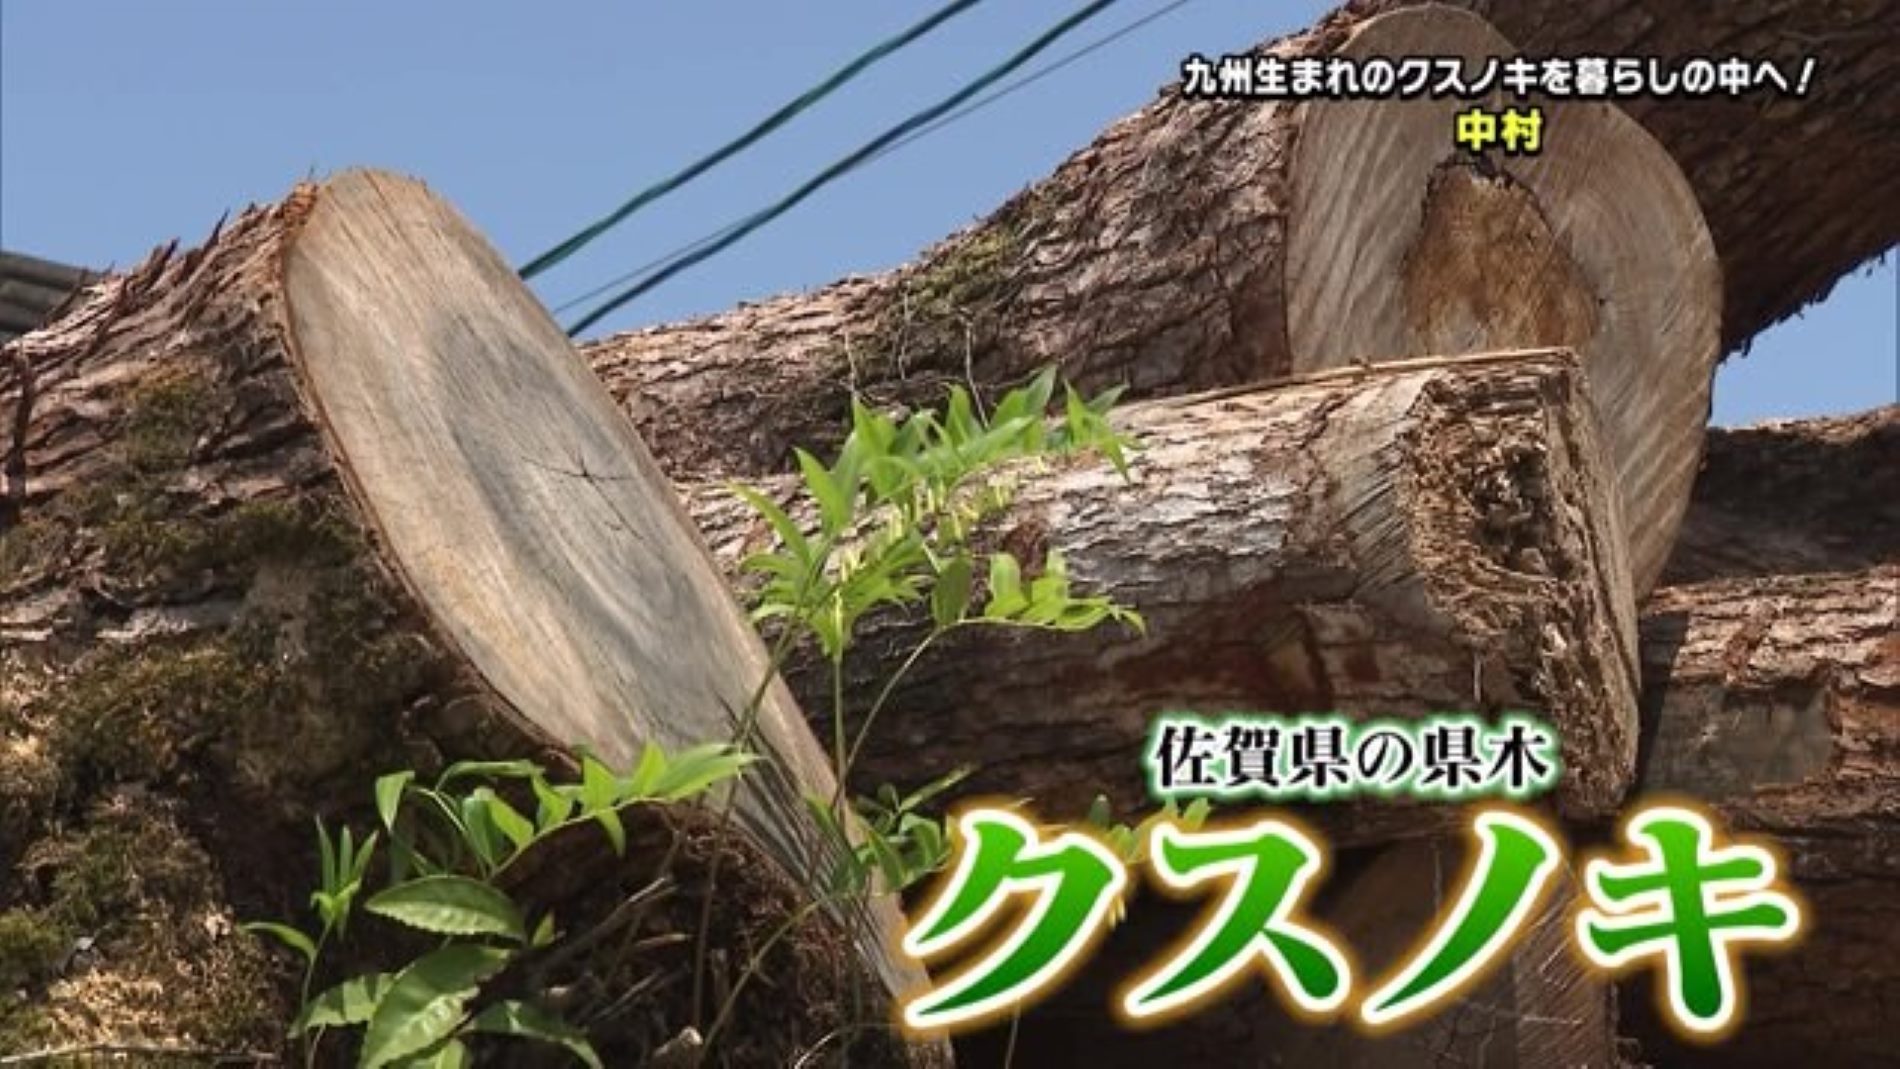  佐賀県の県木『クスノキ』を使って雑貨を製造 神埼市にある「株式会社 中村」